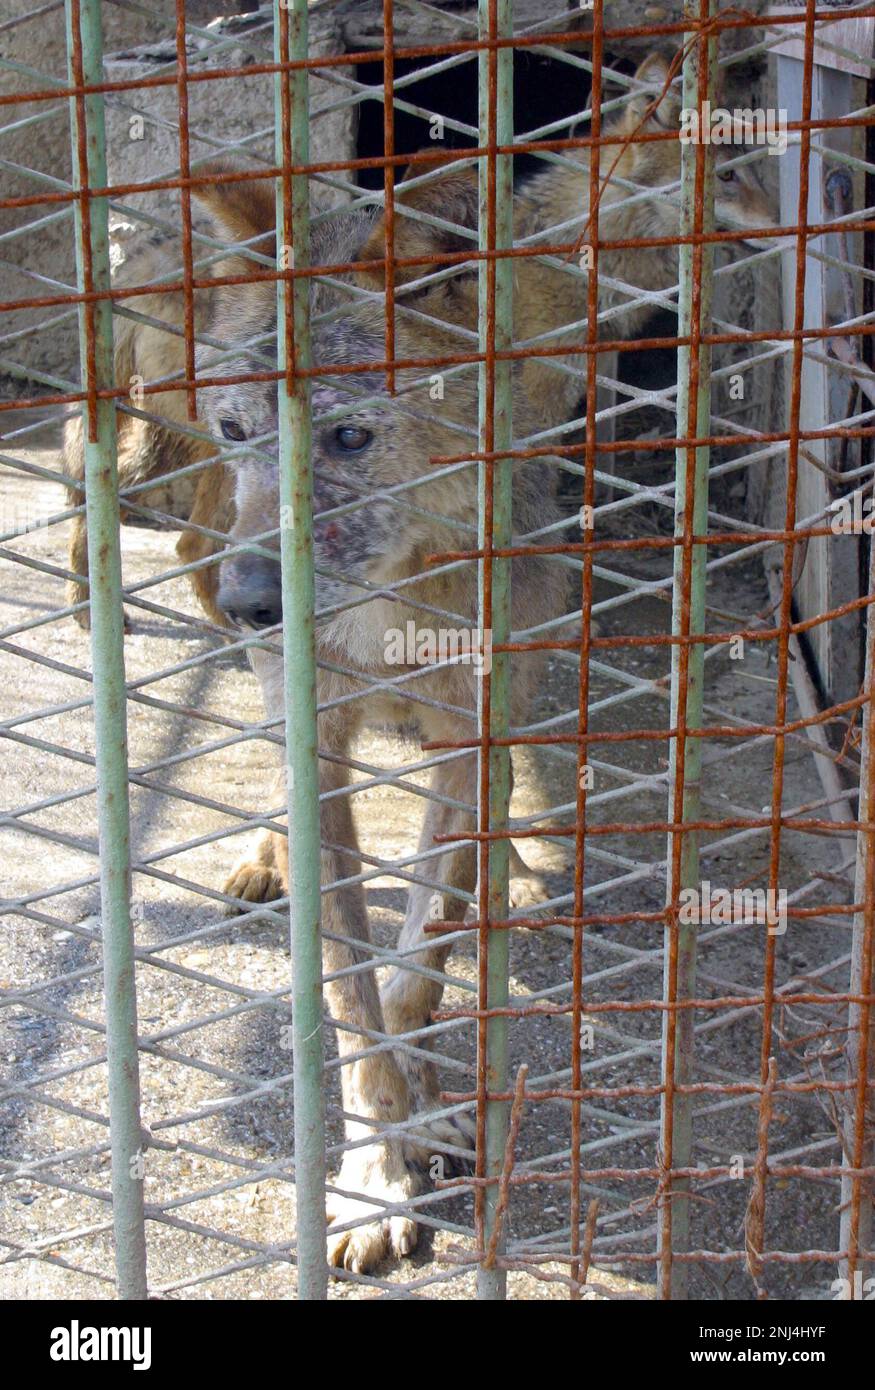 Lo zoo di Skopje fotografato il 2004 marzo. Queste fotografie hanno portato ad un certo numero di articoli di stampa che criticano le condizioni allo Zoo. Nel corso degli anni lo zoo ha ricevuto molte critiche per le condizioni di vita dei suoi animali. Nel 2008 la città ha stanziato 42 milioni di denari in fondi per migliorare lo zoo, e lo zoo ha iniziato a lavorare con l'Associazione europea degli zoo e Aquaria (EAZA) per portare lo zoo agli standard moderni. Nel 2010 erano state costruite nuove recinzioni, il 85% delle mostre più antiche dello zoo era stato rinnovato, lo zoo divenne un candidato all'adesione all'EAZA. Immagine garyroberts/worldwidefeatures.com Foto Stock